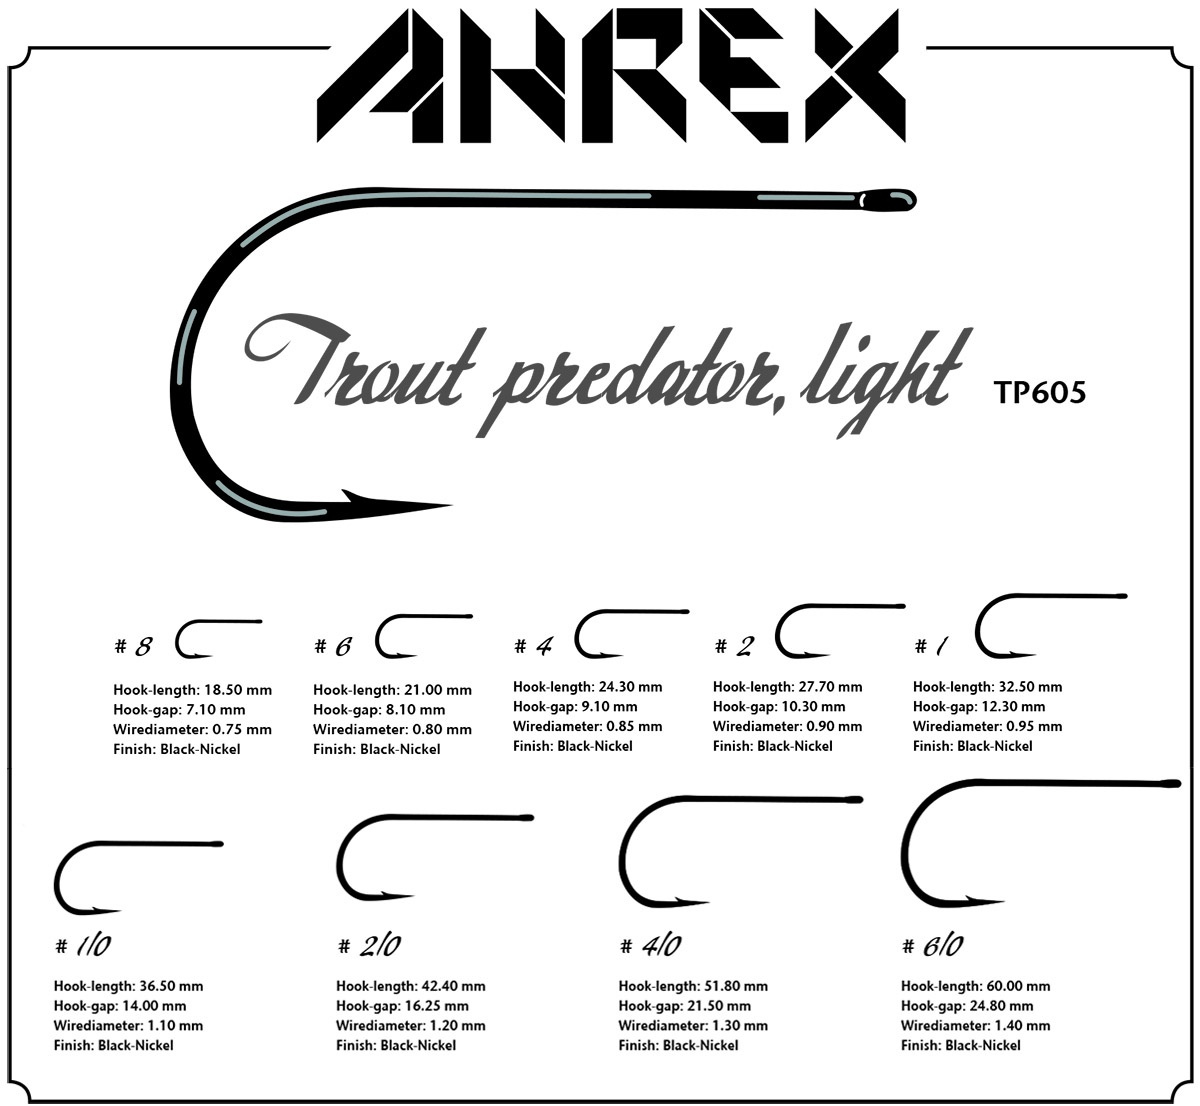 Ahrex TP605 Trout Predator Light Krok 12-pack